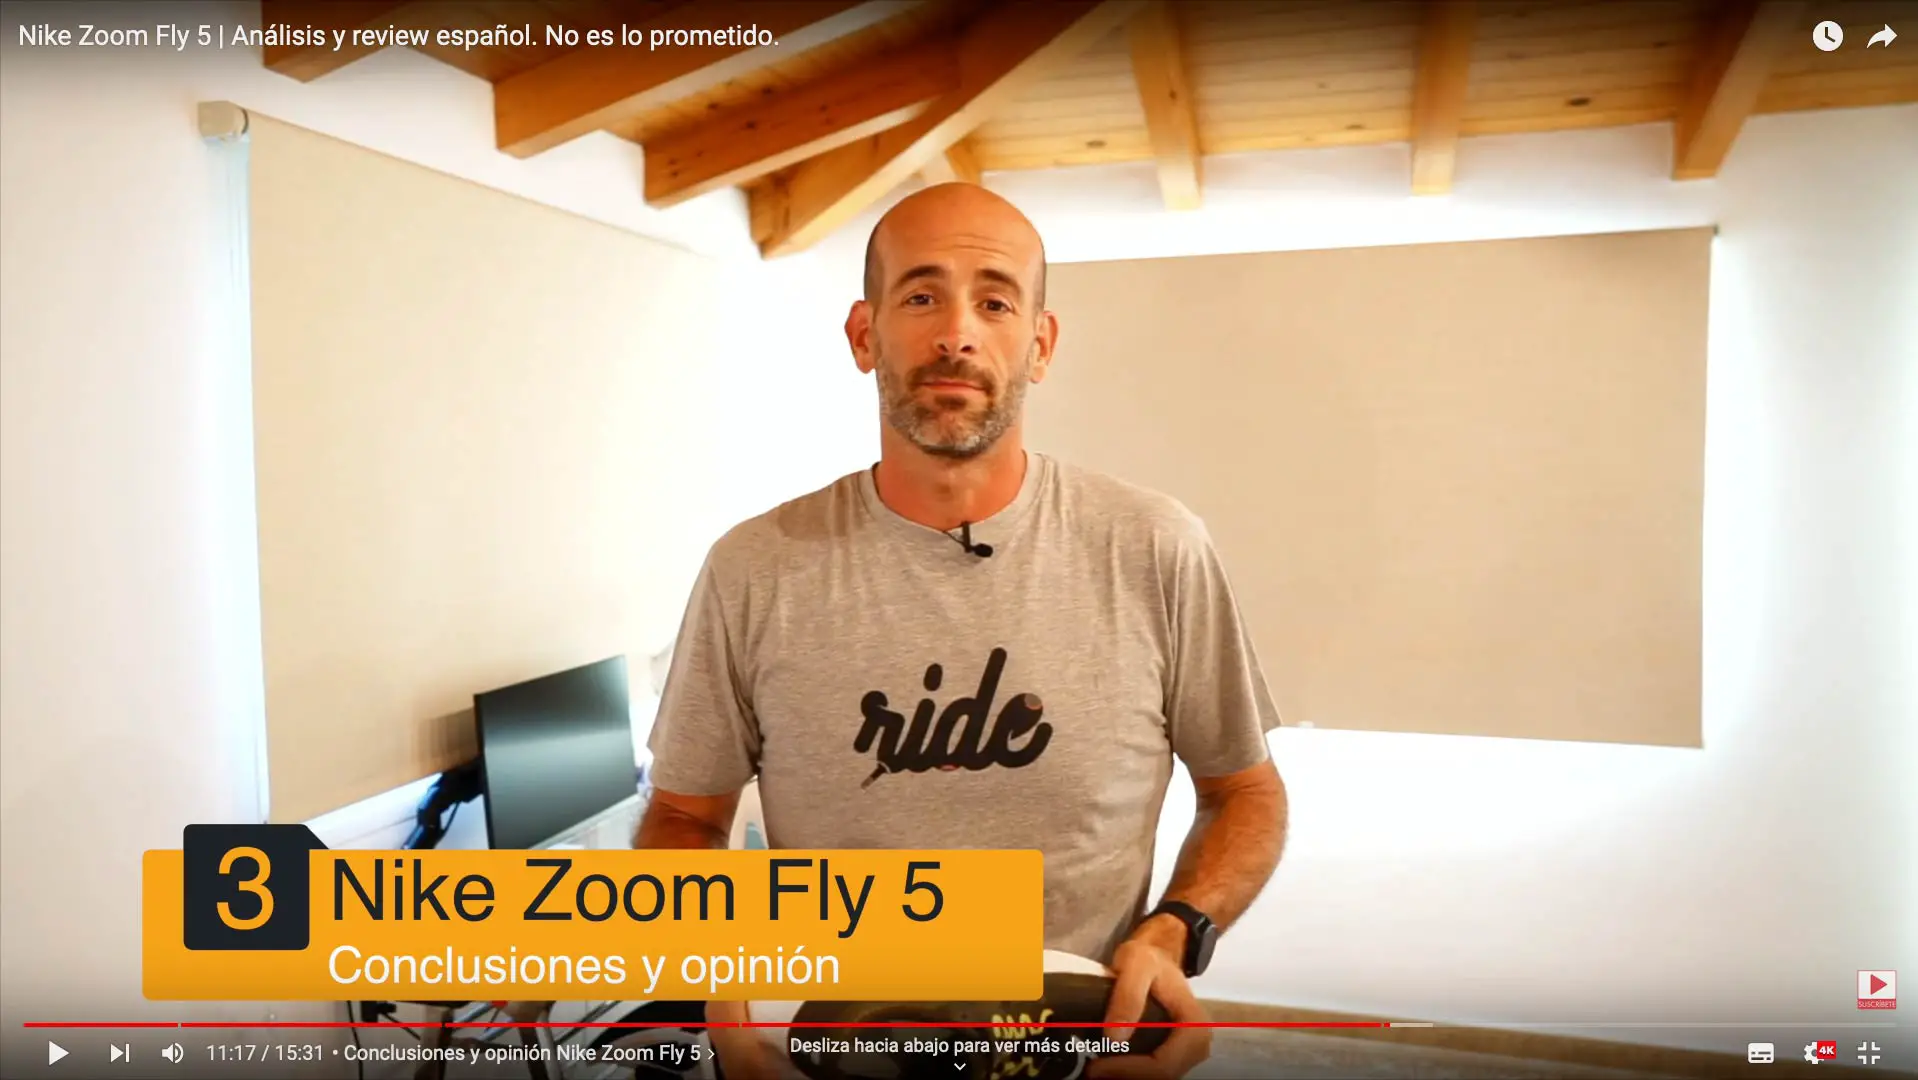 Nike Zoom Fly 5 Análisis y review español. es lo prometido. - Correr una Maratón - de Garmin, Polar, Suunto, COROS...